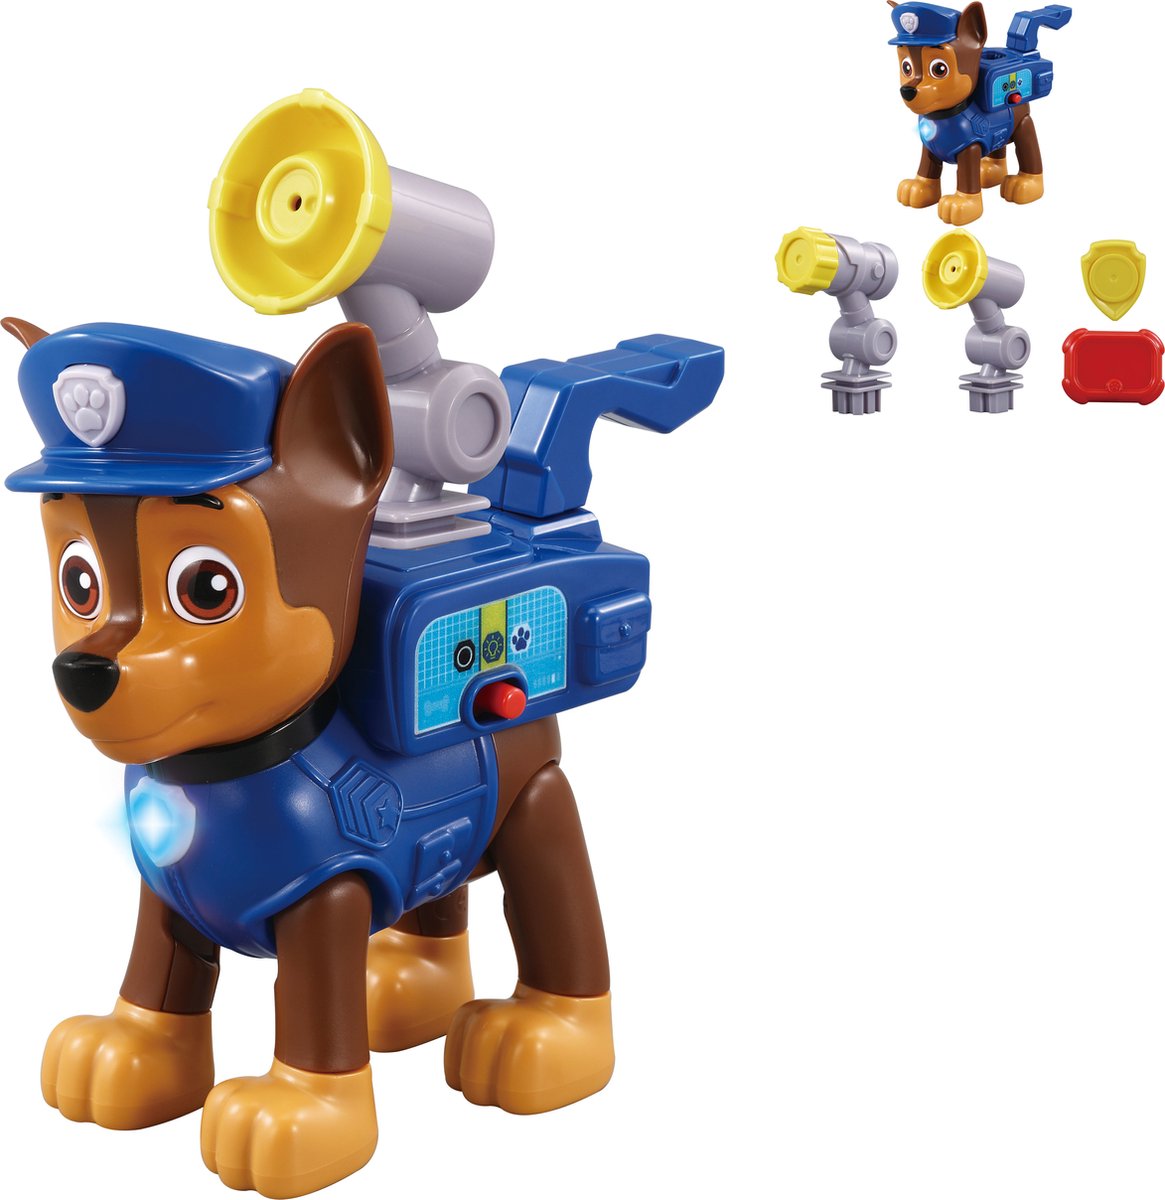 VTech PAW Patrol SmartPup Chase Speelfiguur - Speelgoed Hond - Interactief & Educatief Speelgoed - Kinderspeelgoed 3 Jaar - Blauw - VTech